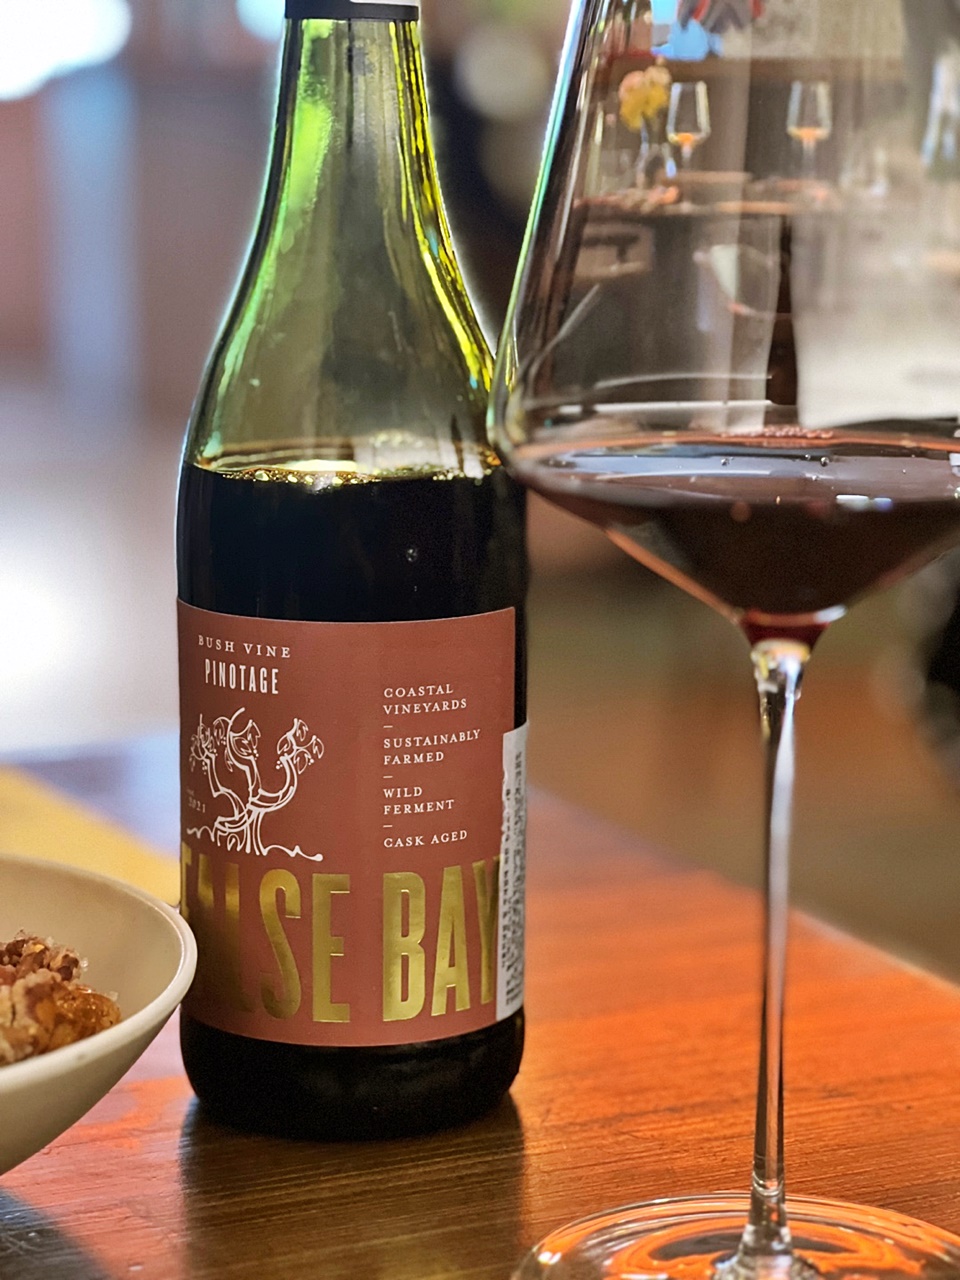 펄스베이 부시바인 피노타쥐(False Bay Bush Vine Pinotage) 2020, 남아공 웨스턴 케이프(Western Cape) 지역에서 생산된다